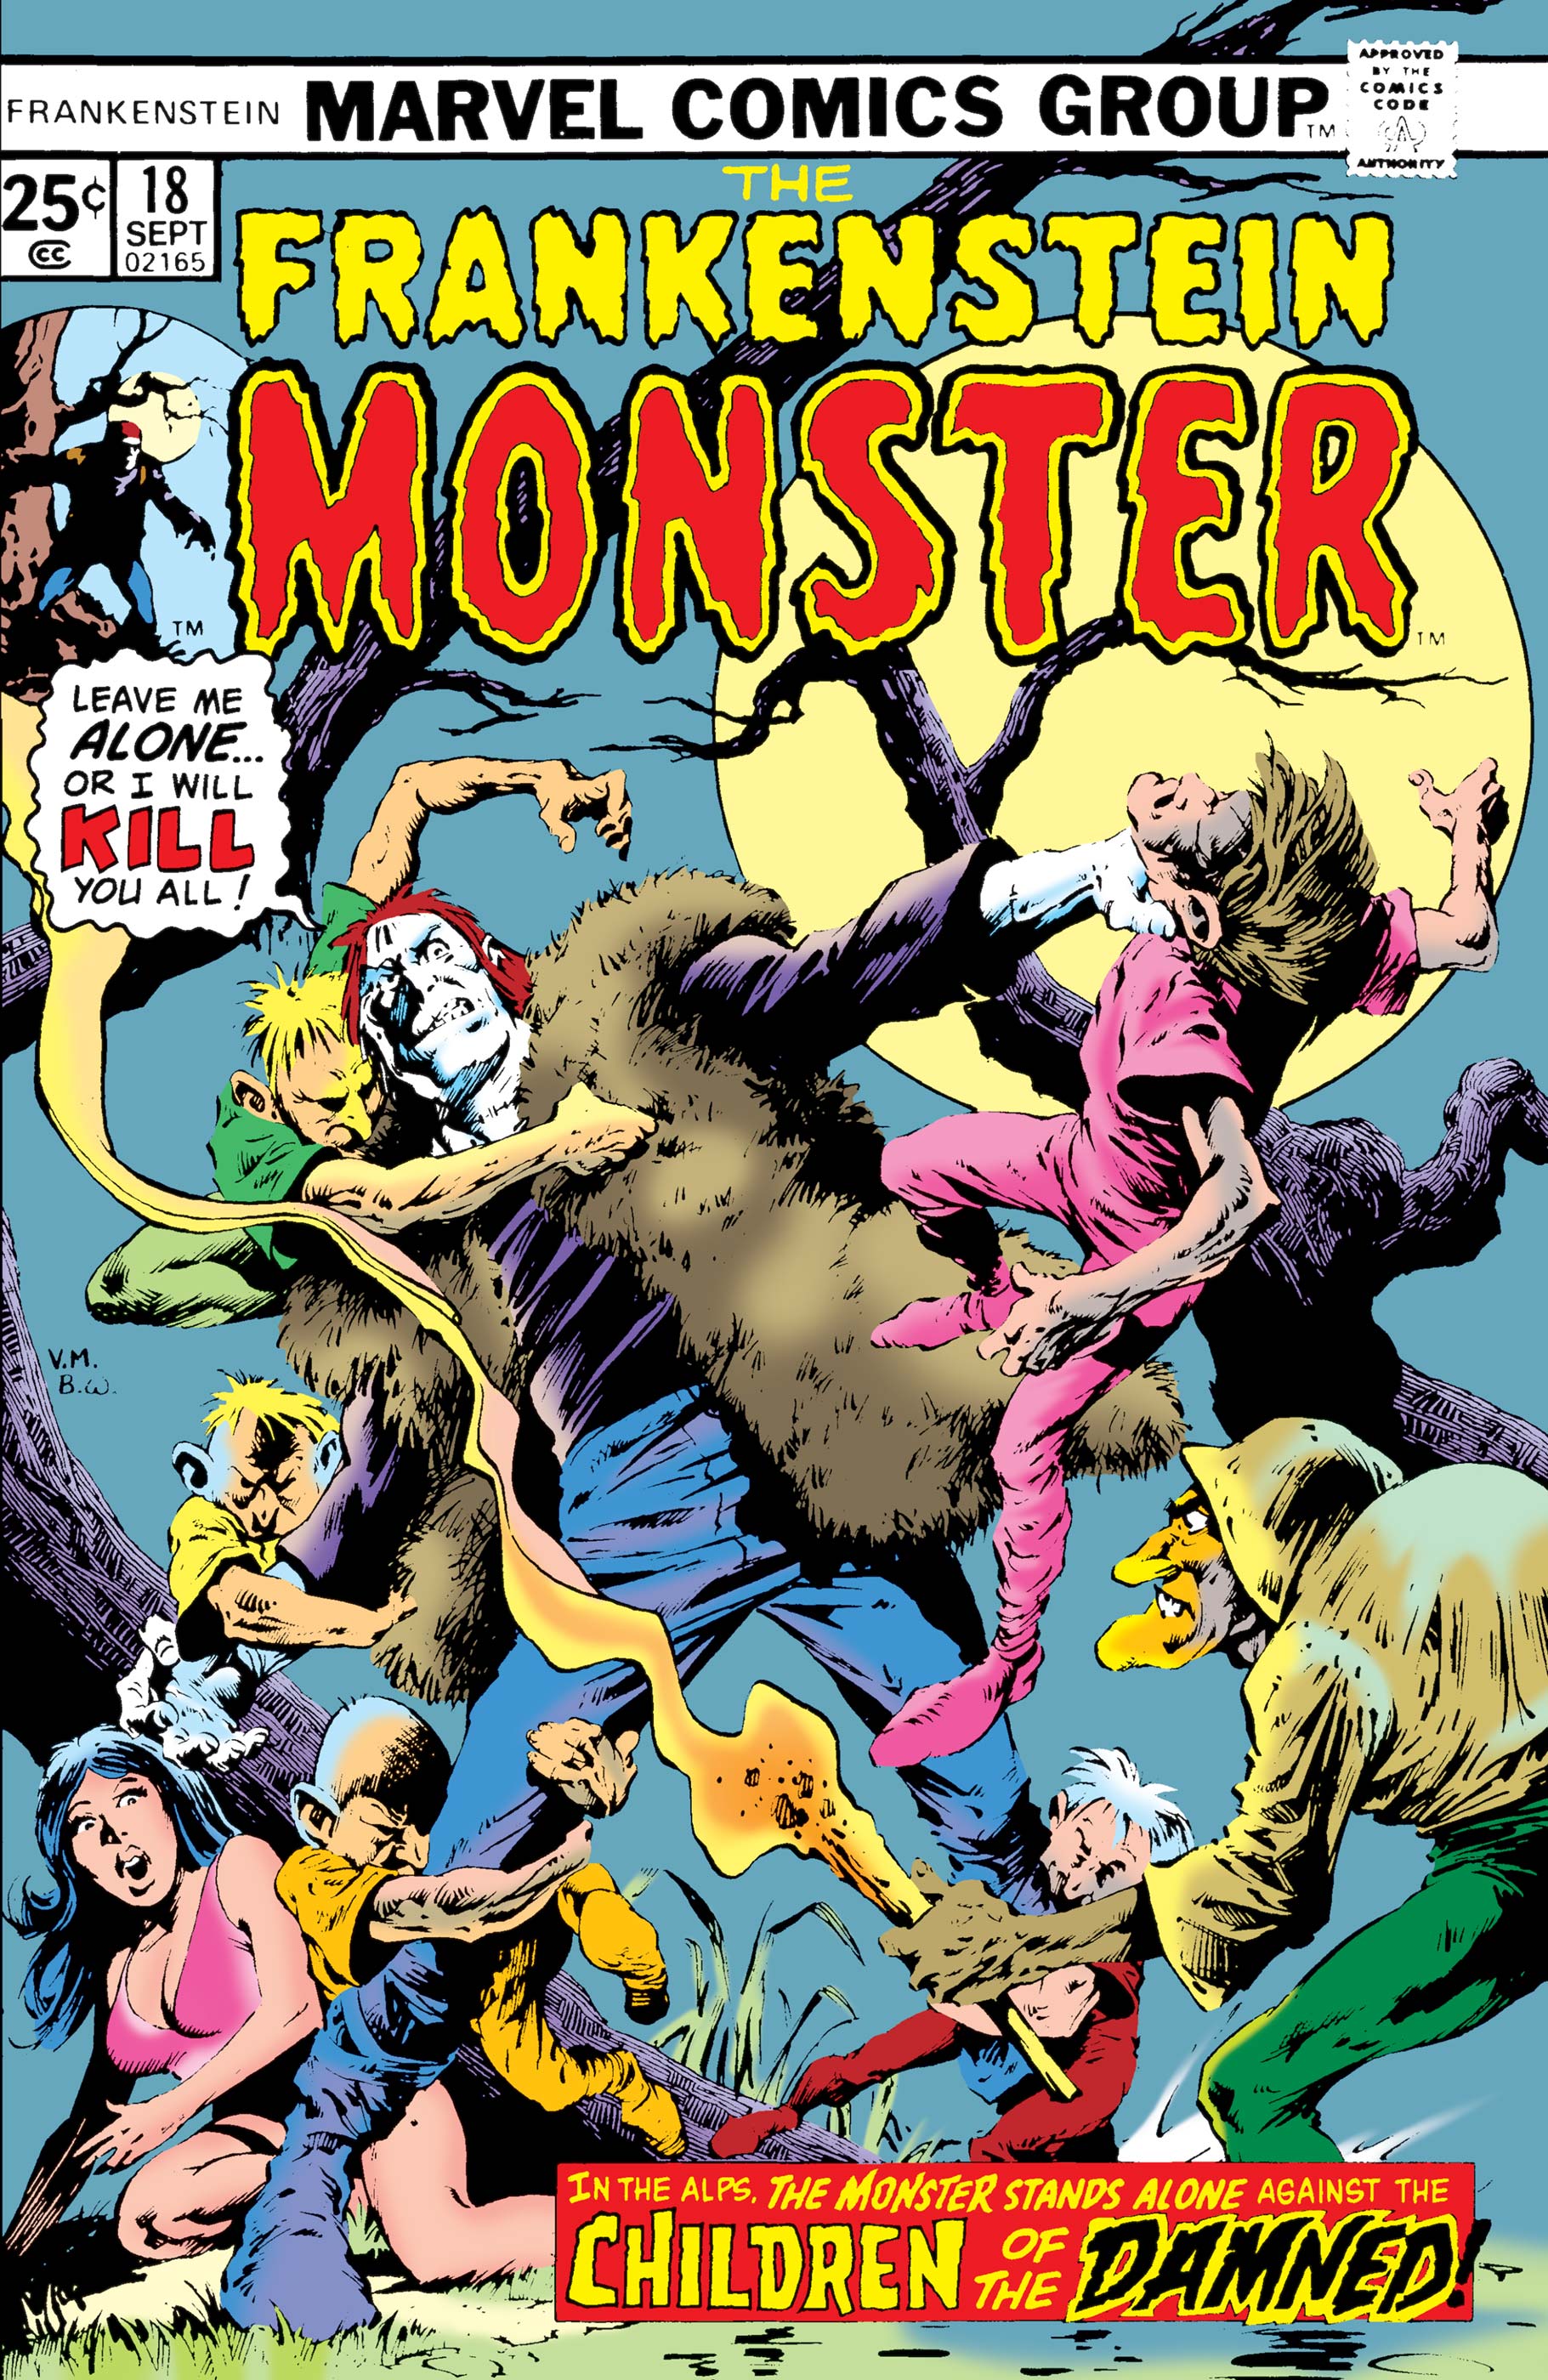 Frankenstein (1973) #18